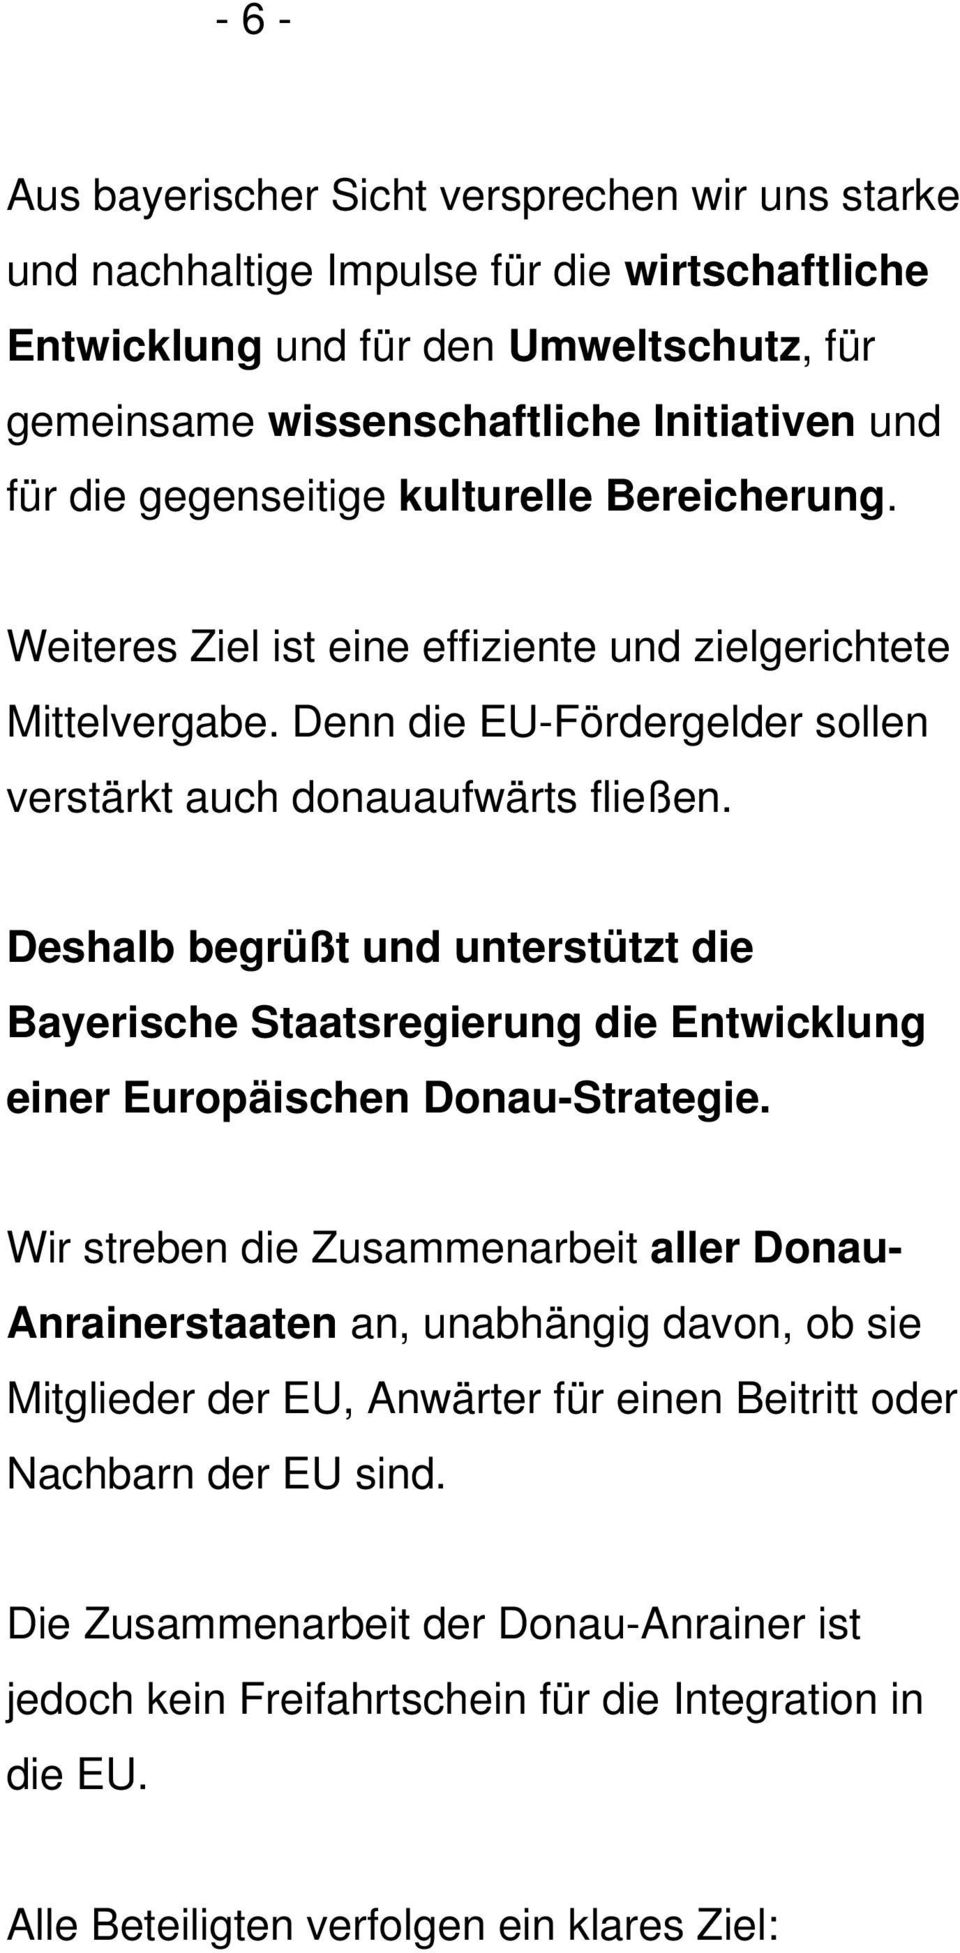 Deshalb begrüßt und unterstützt die Bayerische Staatsregierung die Entwicklung einer Europäischen Donau-Strategie.